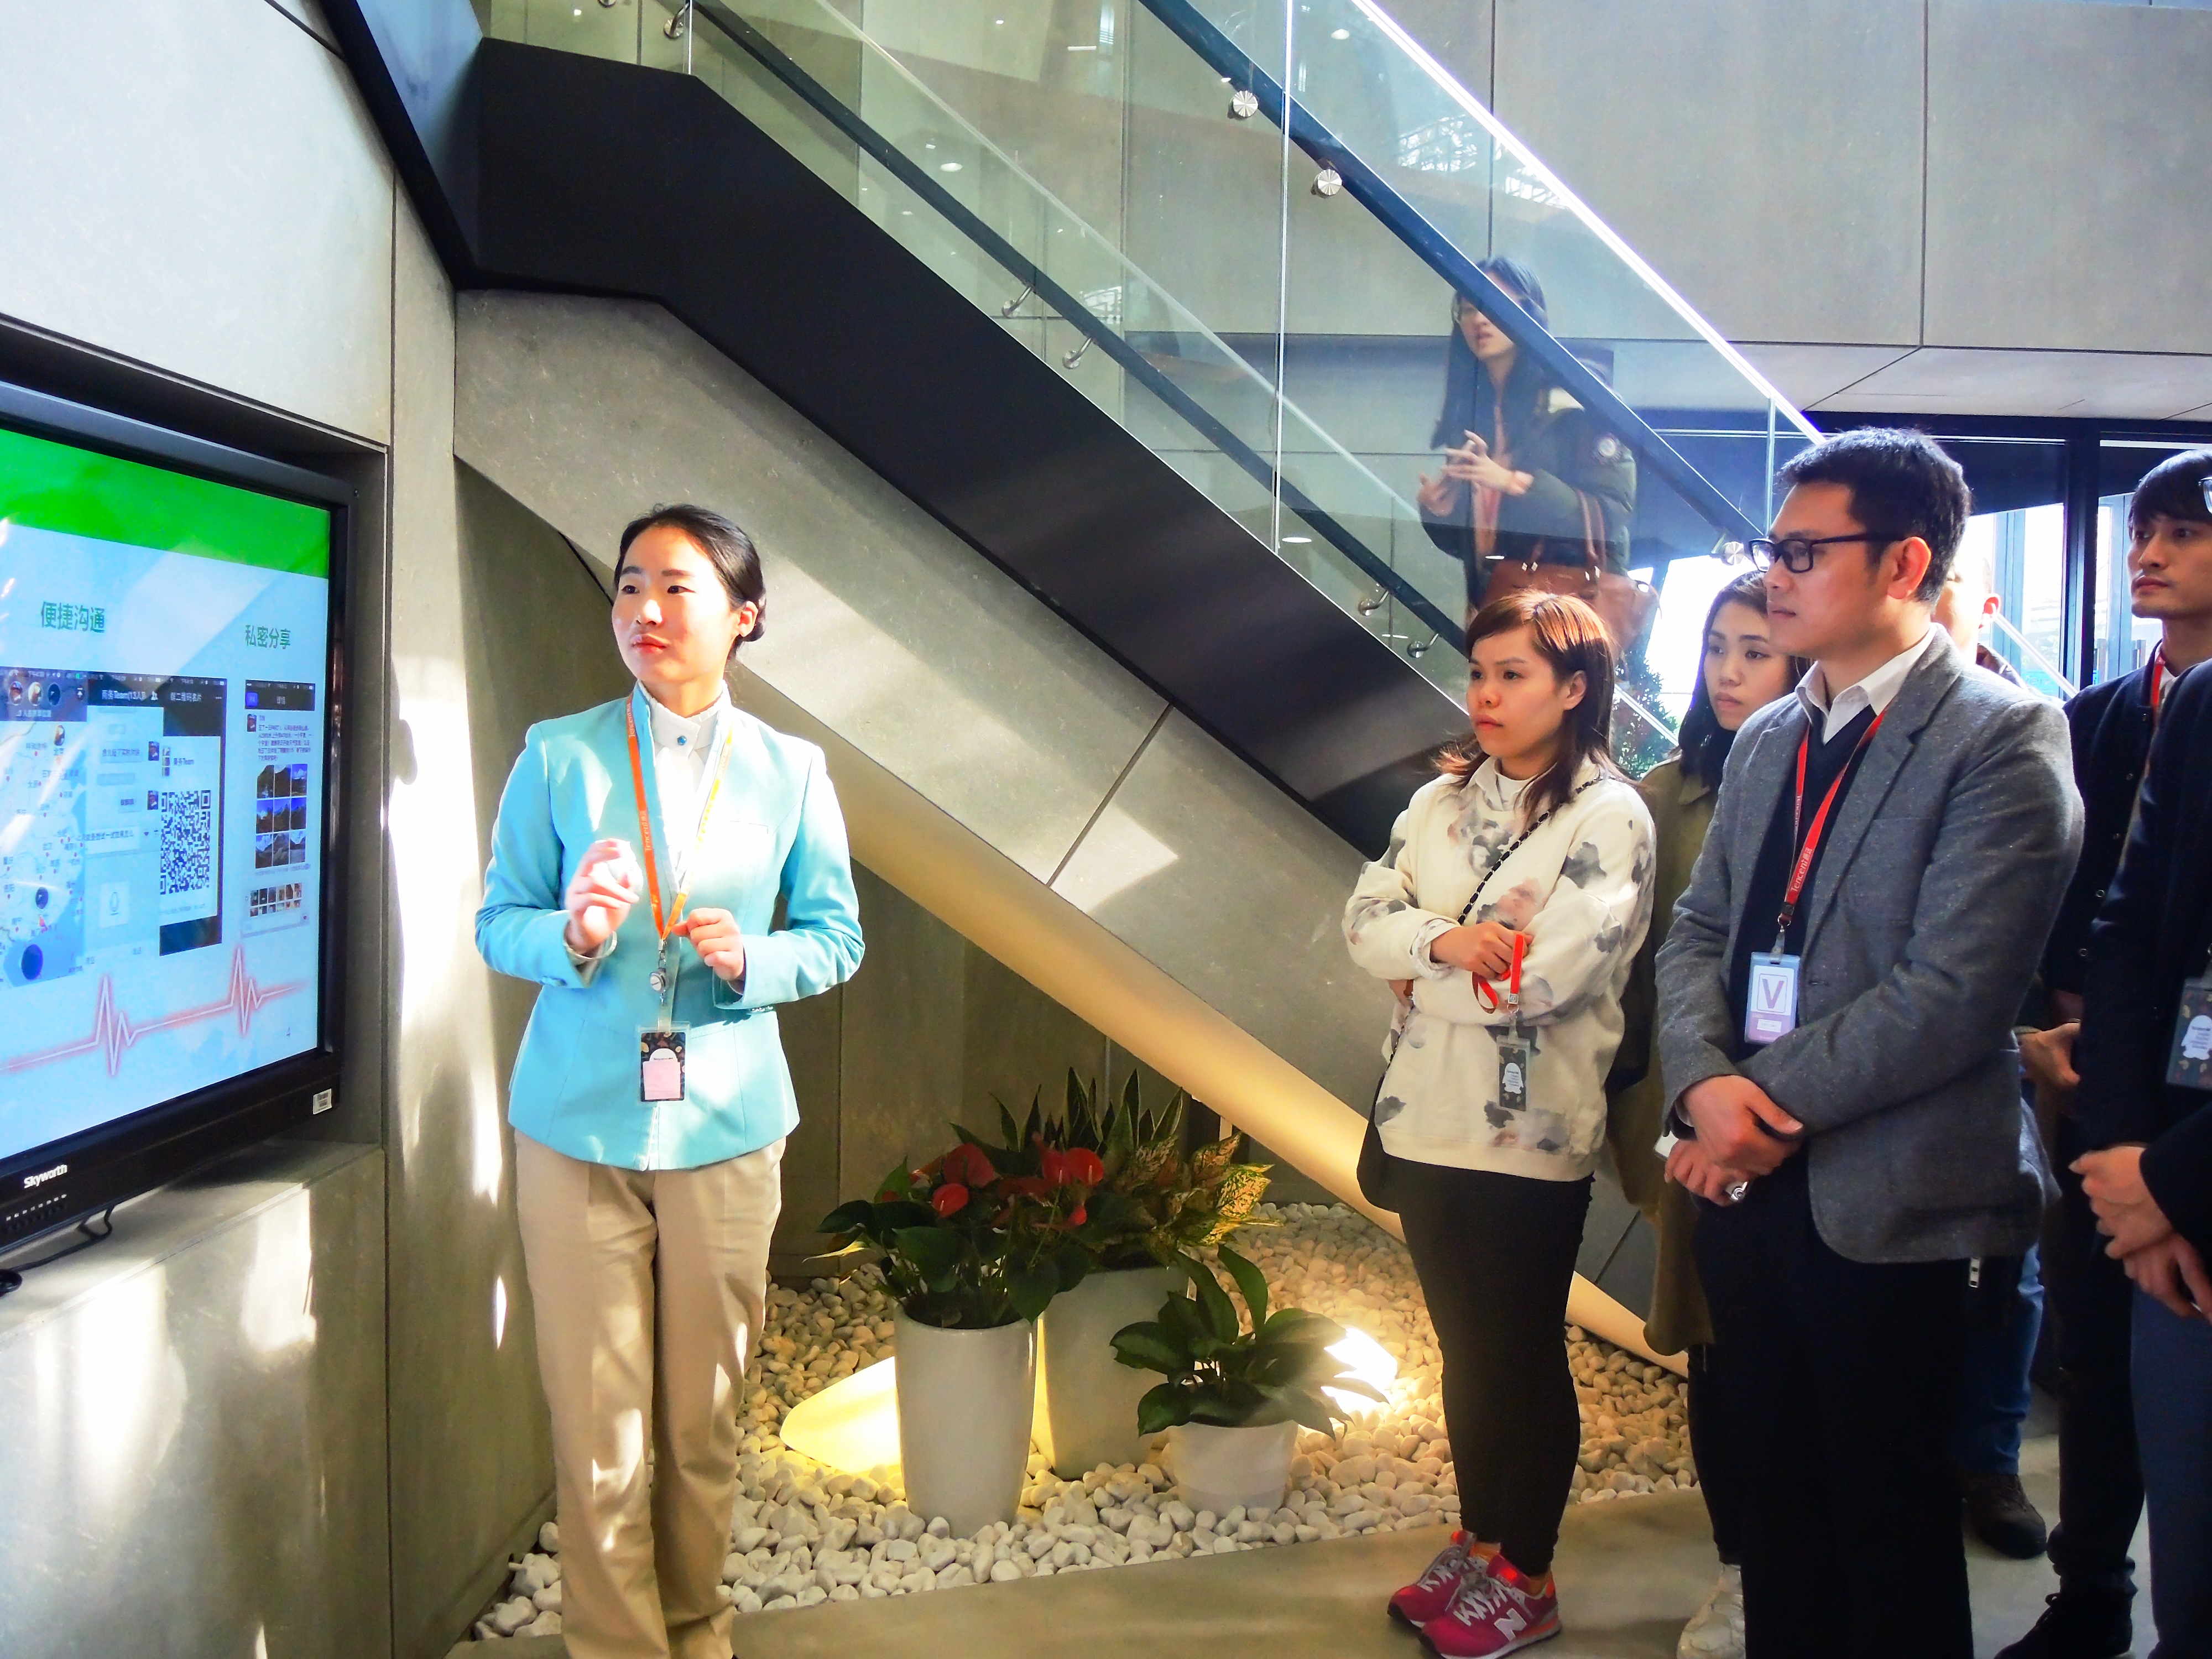 A10-2016年工聯青委參訪位於廣州的騰訊研發中心了解科技發展改變青年生活及工作習慣